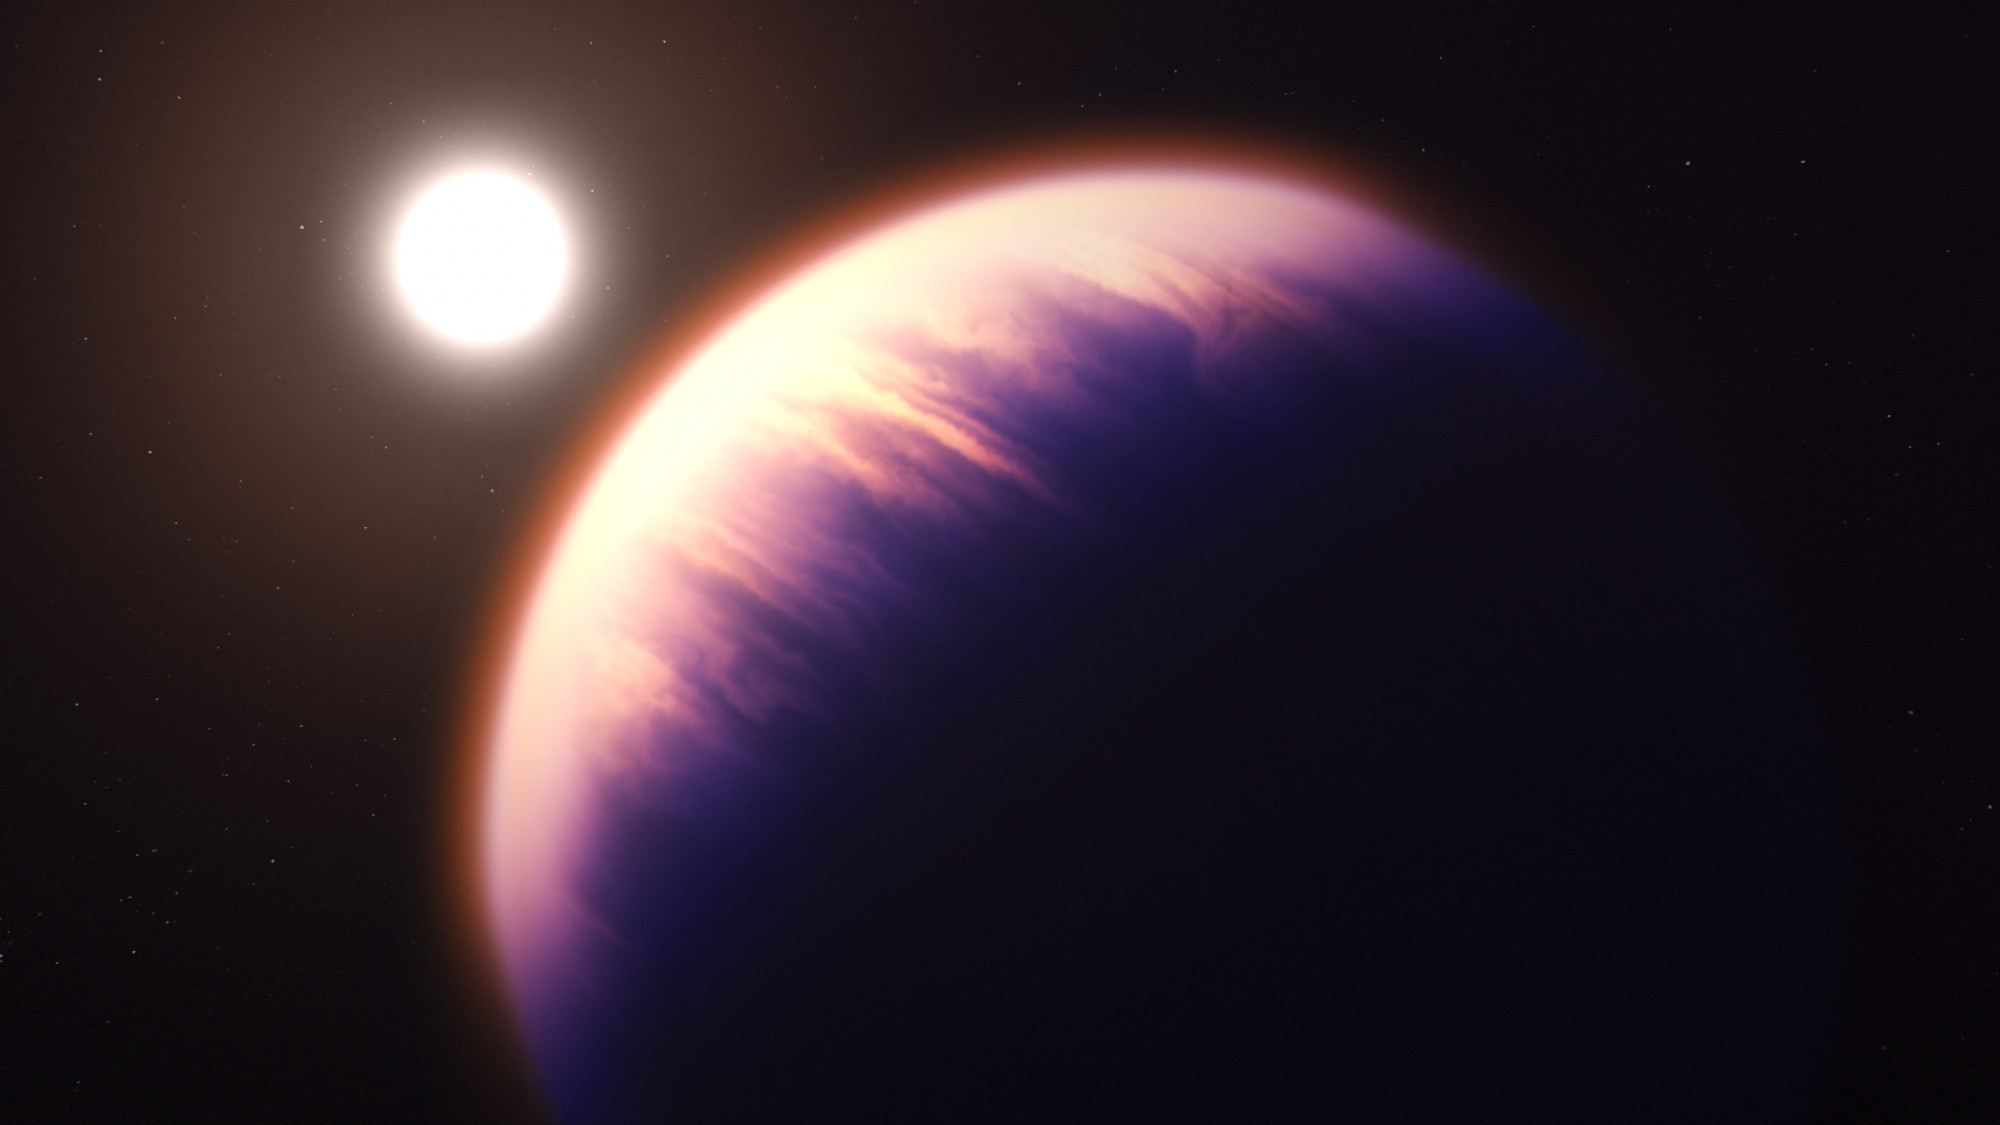 Részletes elemzést küldött a WASP-39b bolygó légköréről a James Webb űrtávcső